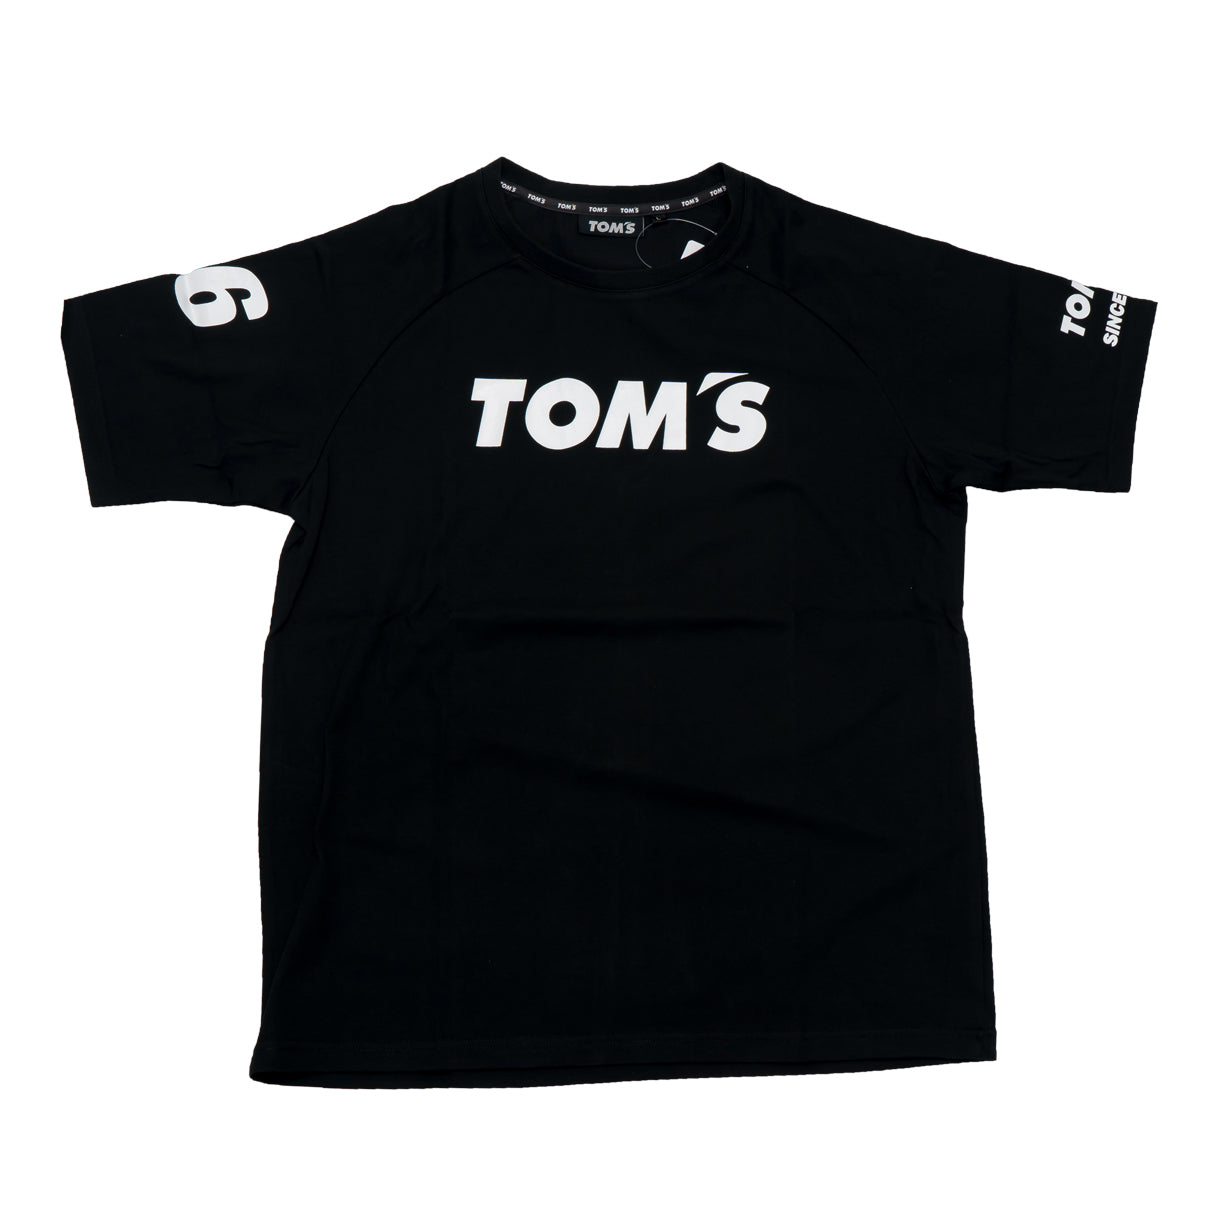 TOM'S Racing - Short Sleeve Tee #36 Black